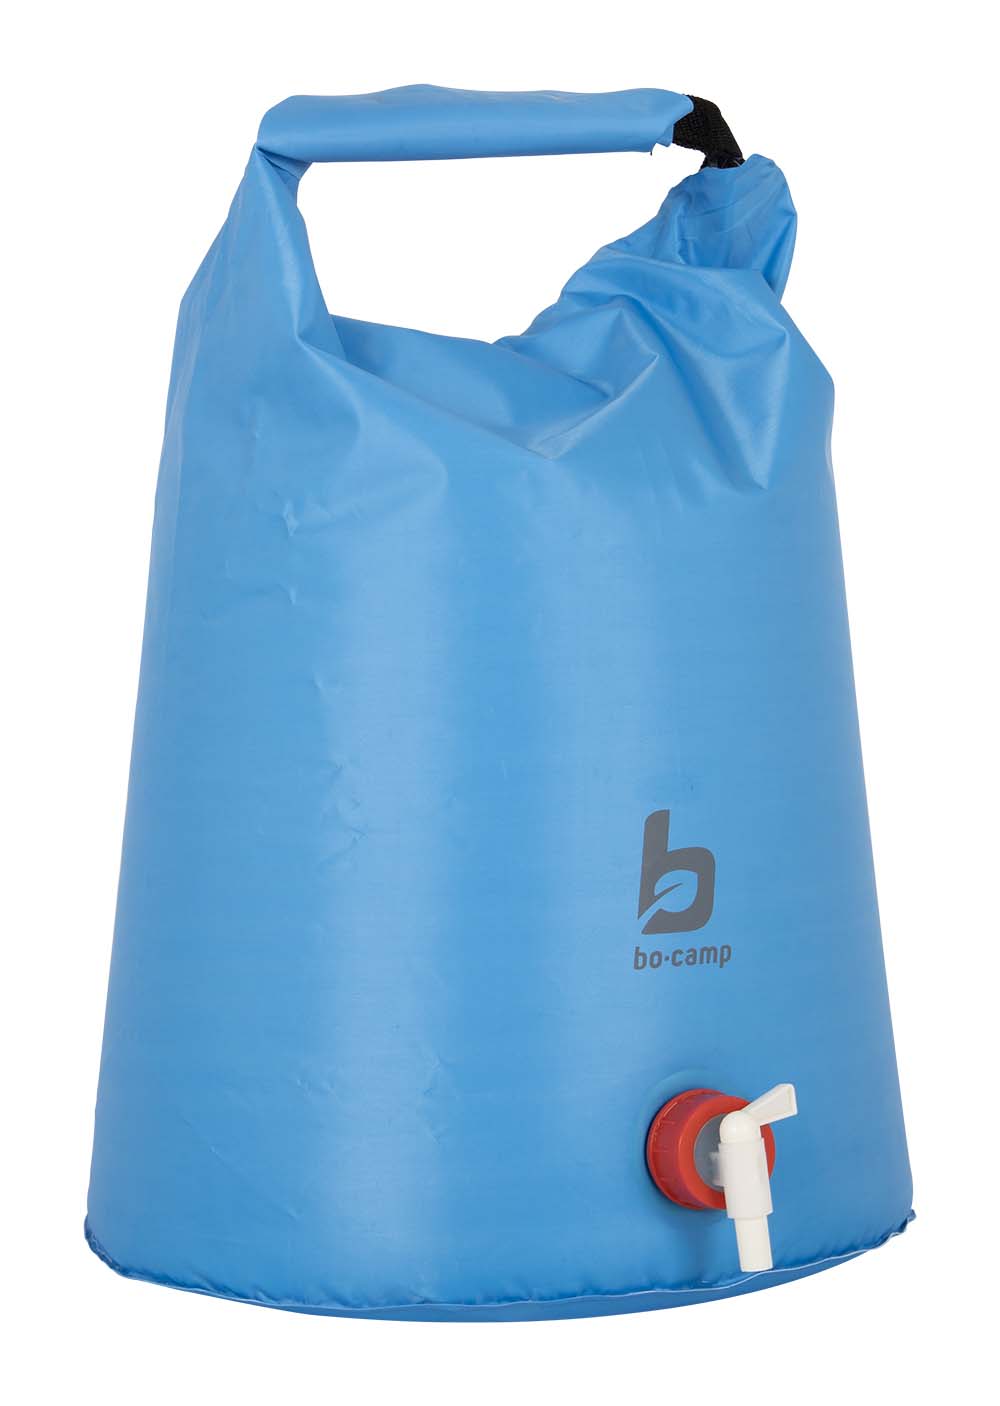 6681200 Un saco acuático plegable, plano y resistente. Ideal para llevar de viaje o para usar en el camping. Después de su uso, el aqua sac se puede plegar y guardar de forma compacta. La bolsa de agua tiene un práctico grifo y un asa en la parte superior para transportar la bolsa. Además, la bolsa de agua no contiene BPA.